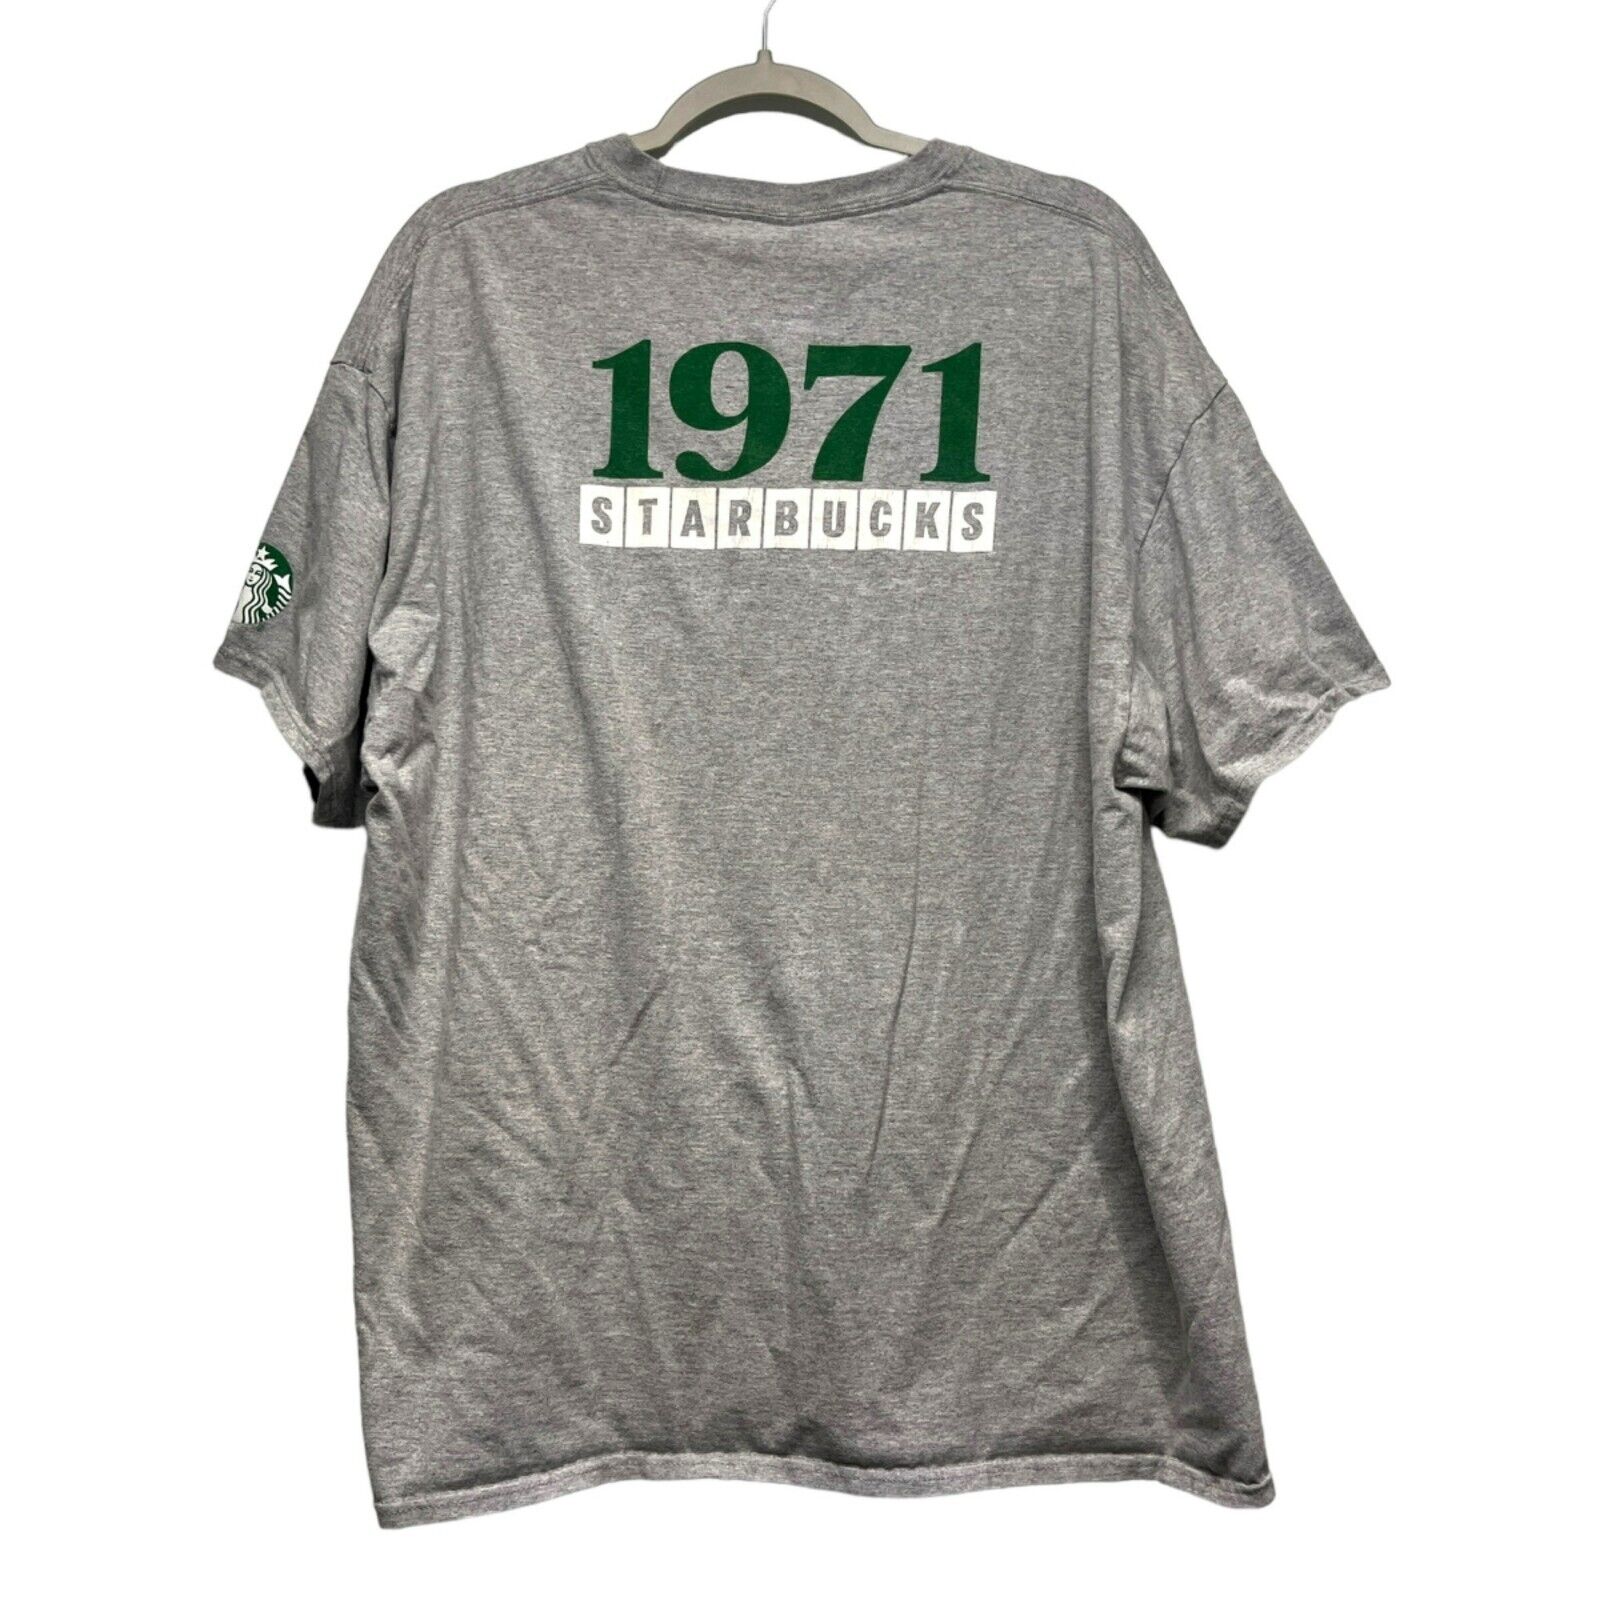 Starbucks Coffee T Shirt Employee Staff 50 Year Anniversary 1971 - 2021 Gray 2XL